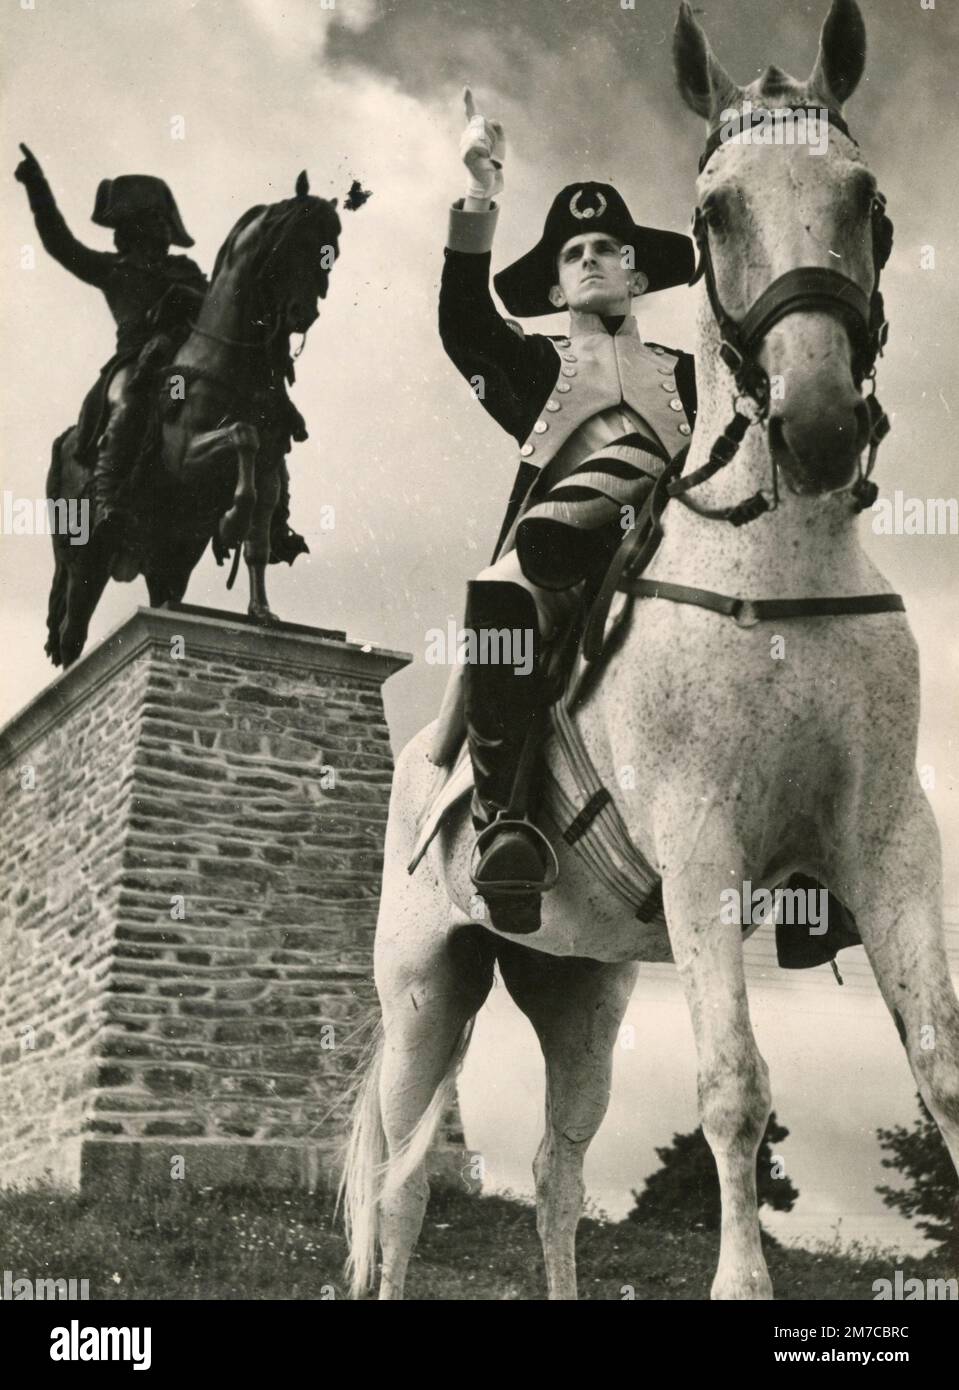 Tenente francese Champagne de Labriolle, imitando, a cavallo, la statua equestre del generale Kleber, Ecole de Saint-Cyr, Coetquidan, Francia 1948 Foto Stock